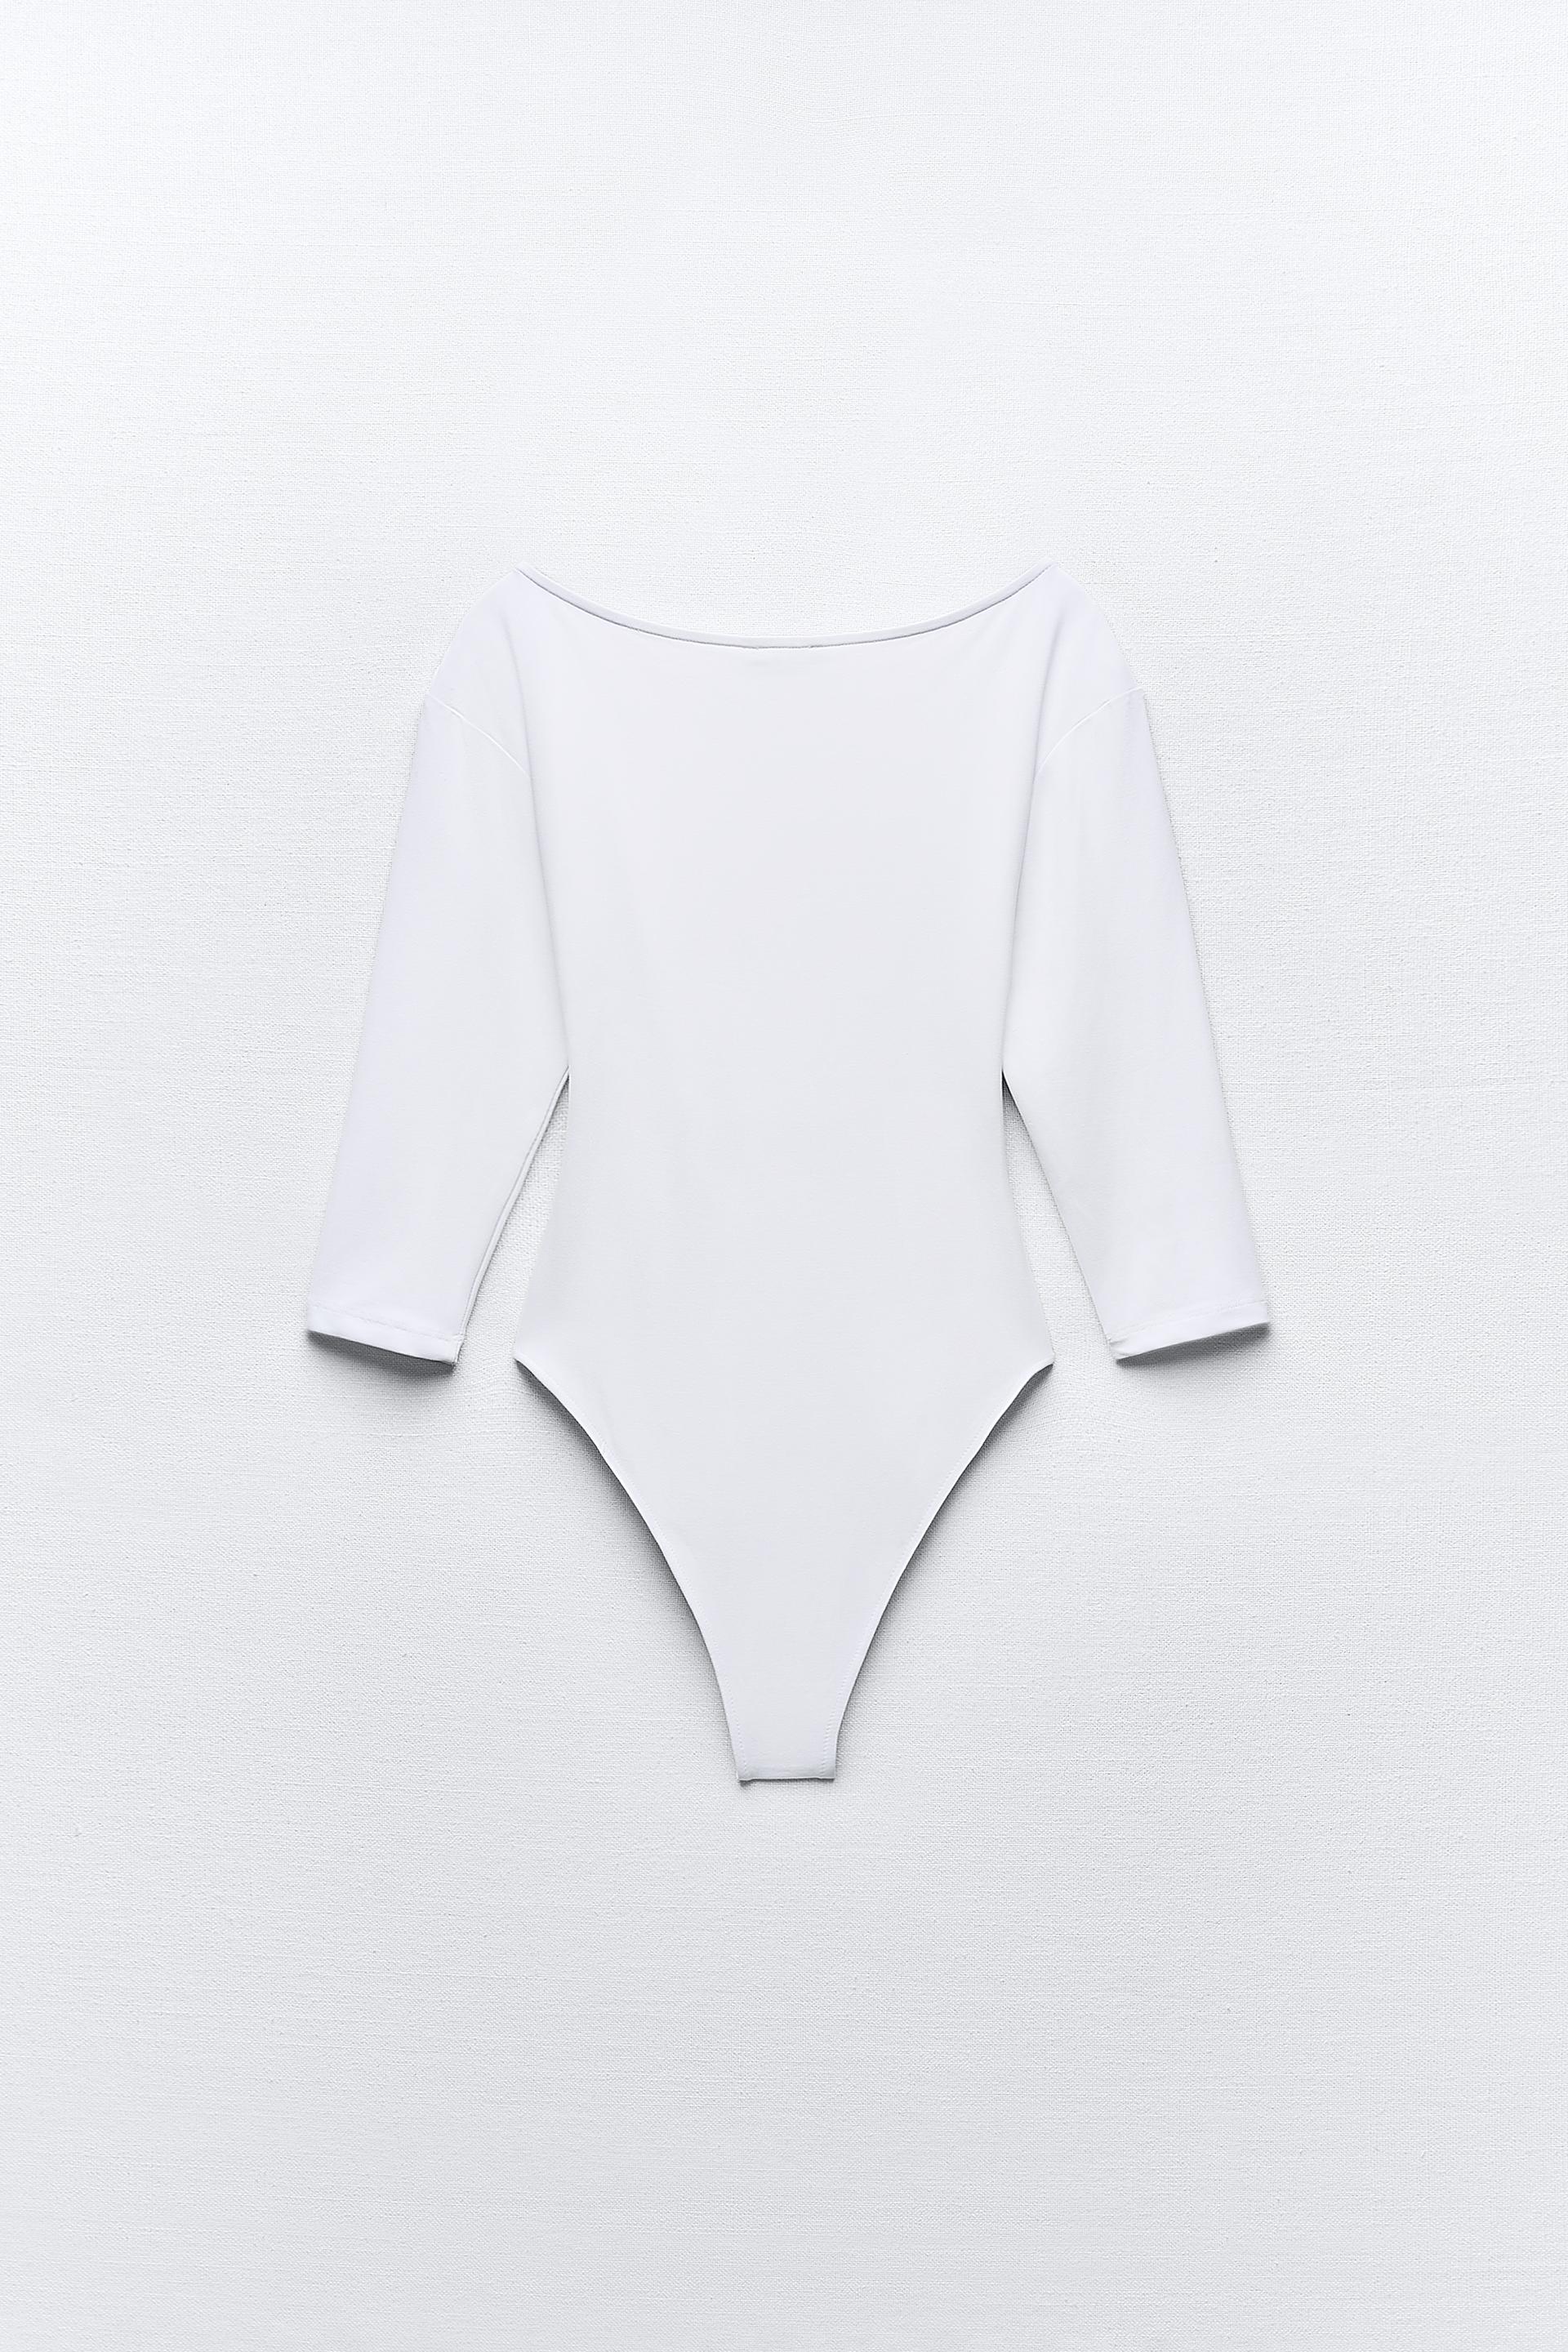 ZARA Wrap Bodysuit Top 5039/847 - M size (new with tags)